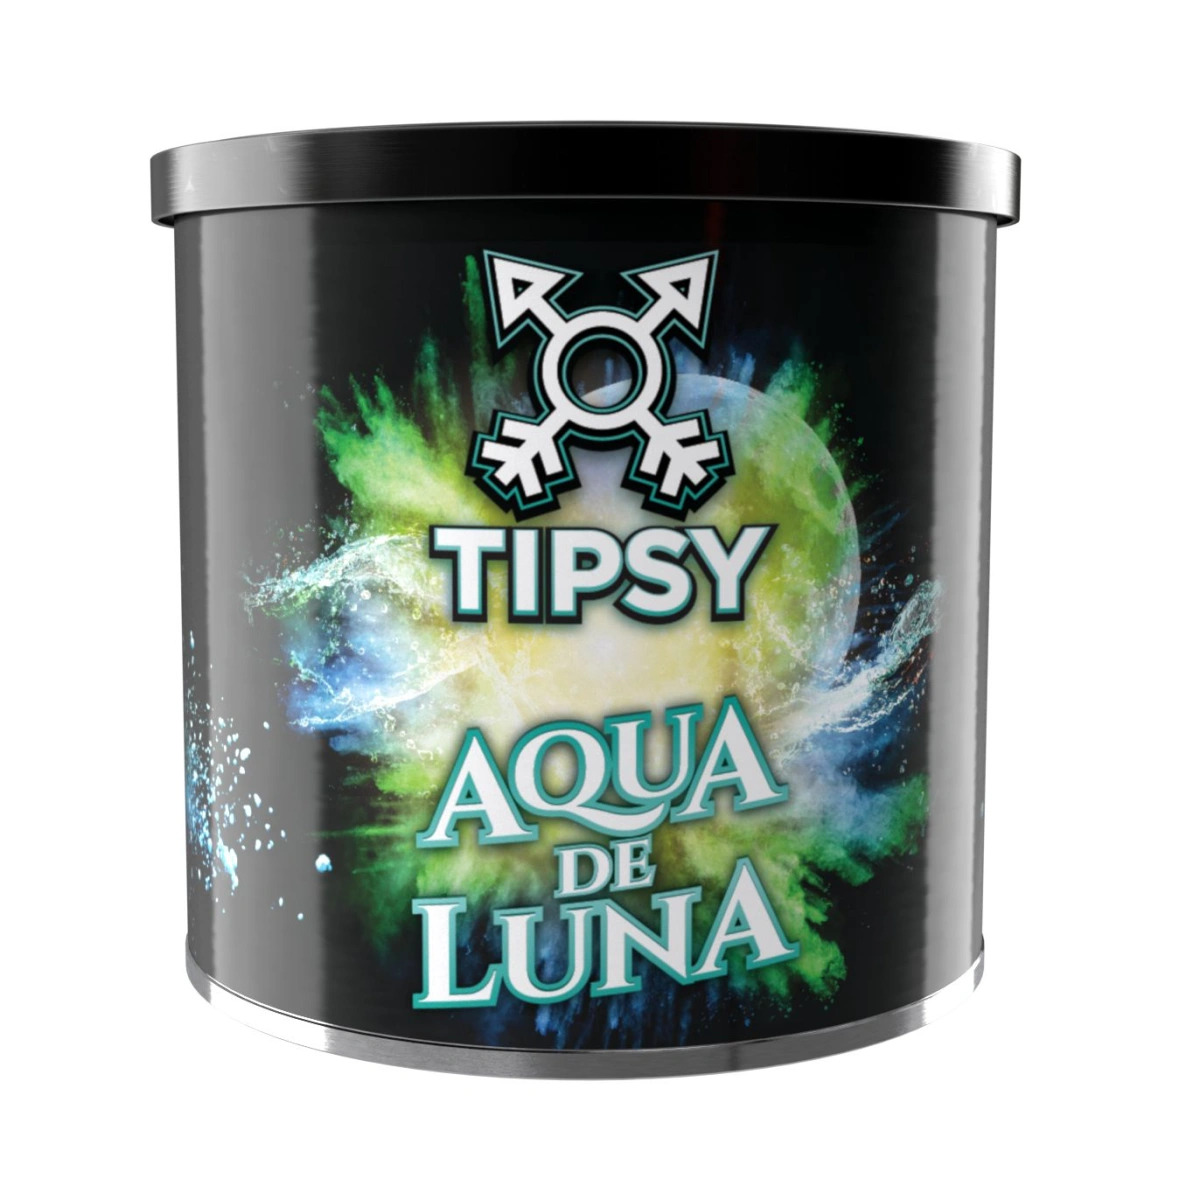 Aqua de luna | Tipsy